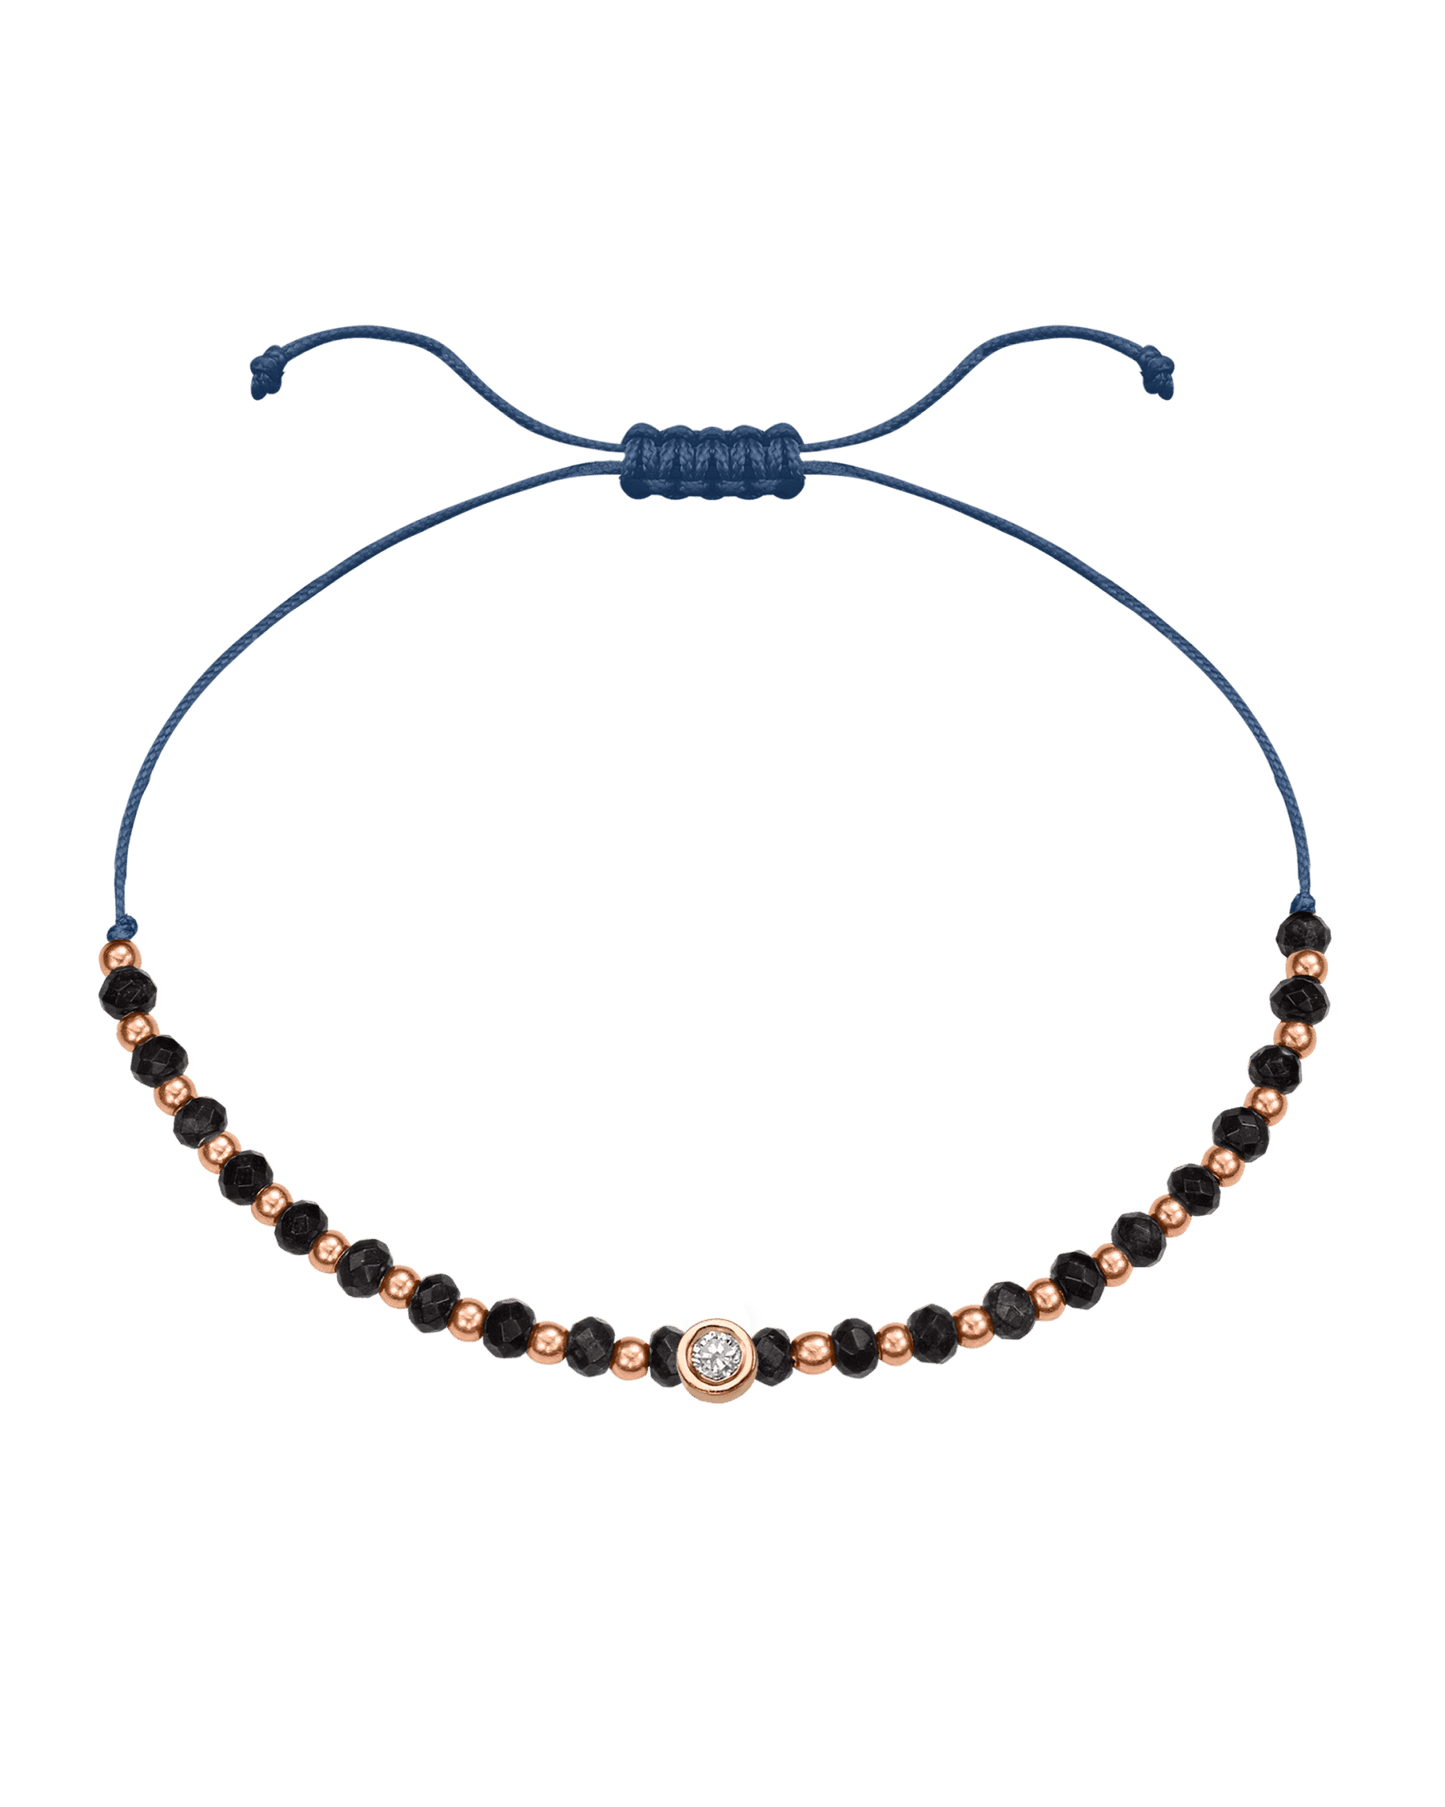 Black Onyx Gemstone String of Love Bracelet for Protection - 14K Rose Gold Bracelets 14K Solid Gold Indigo Medium: 0.04ct 